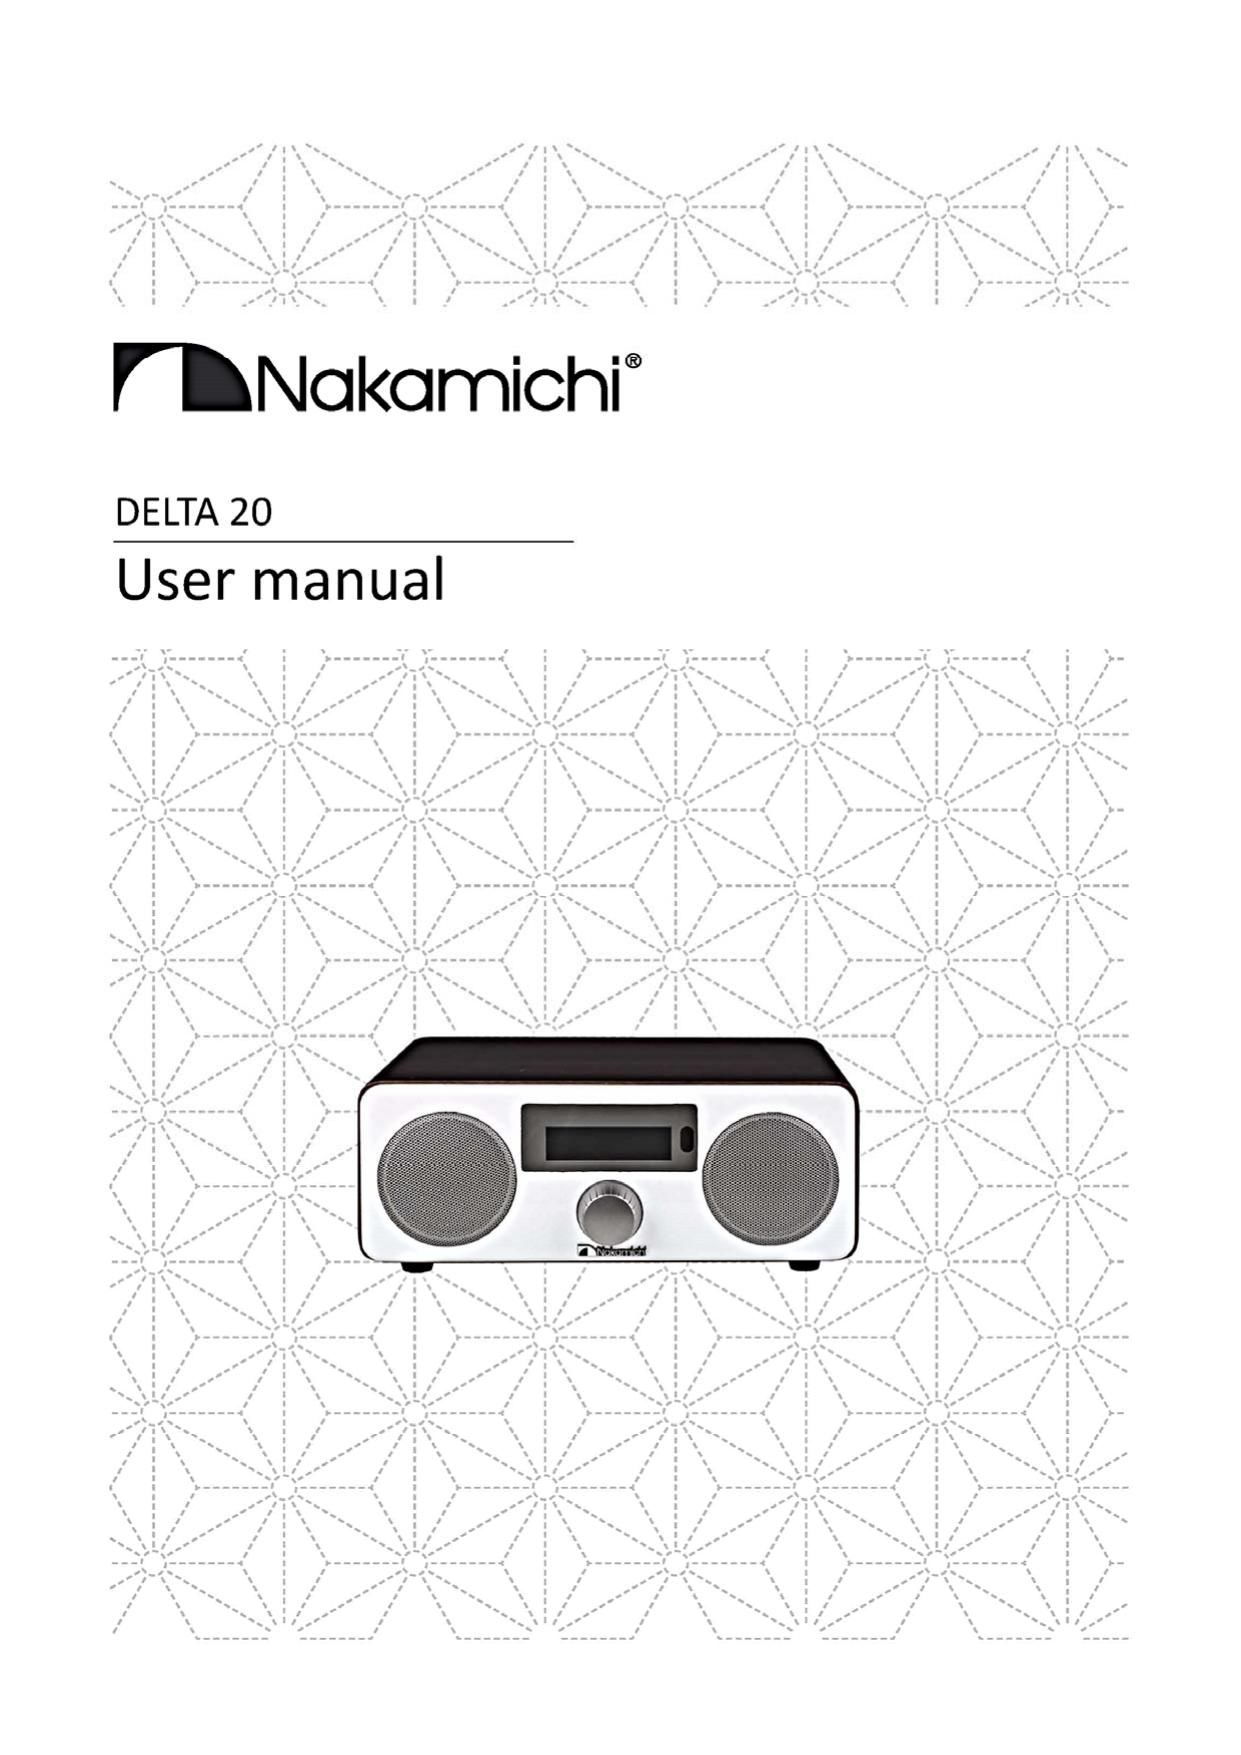 Nakamichi DELTA 20 Owners Manual